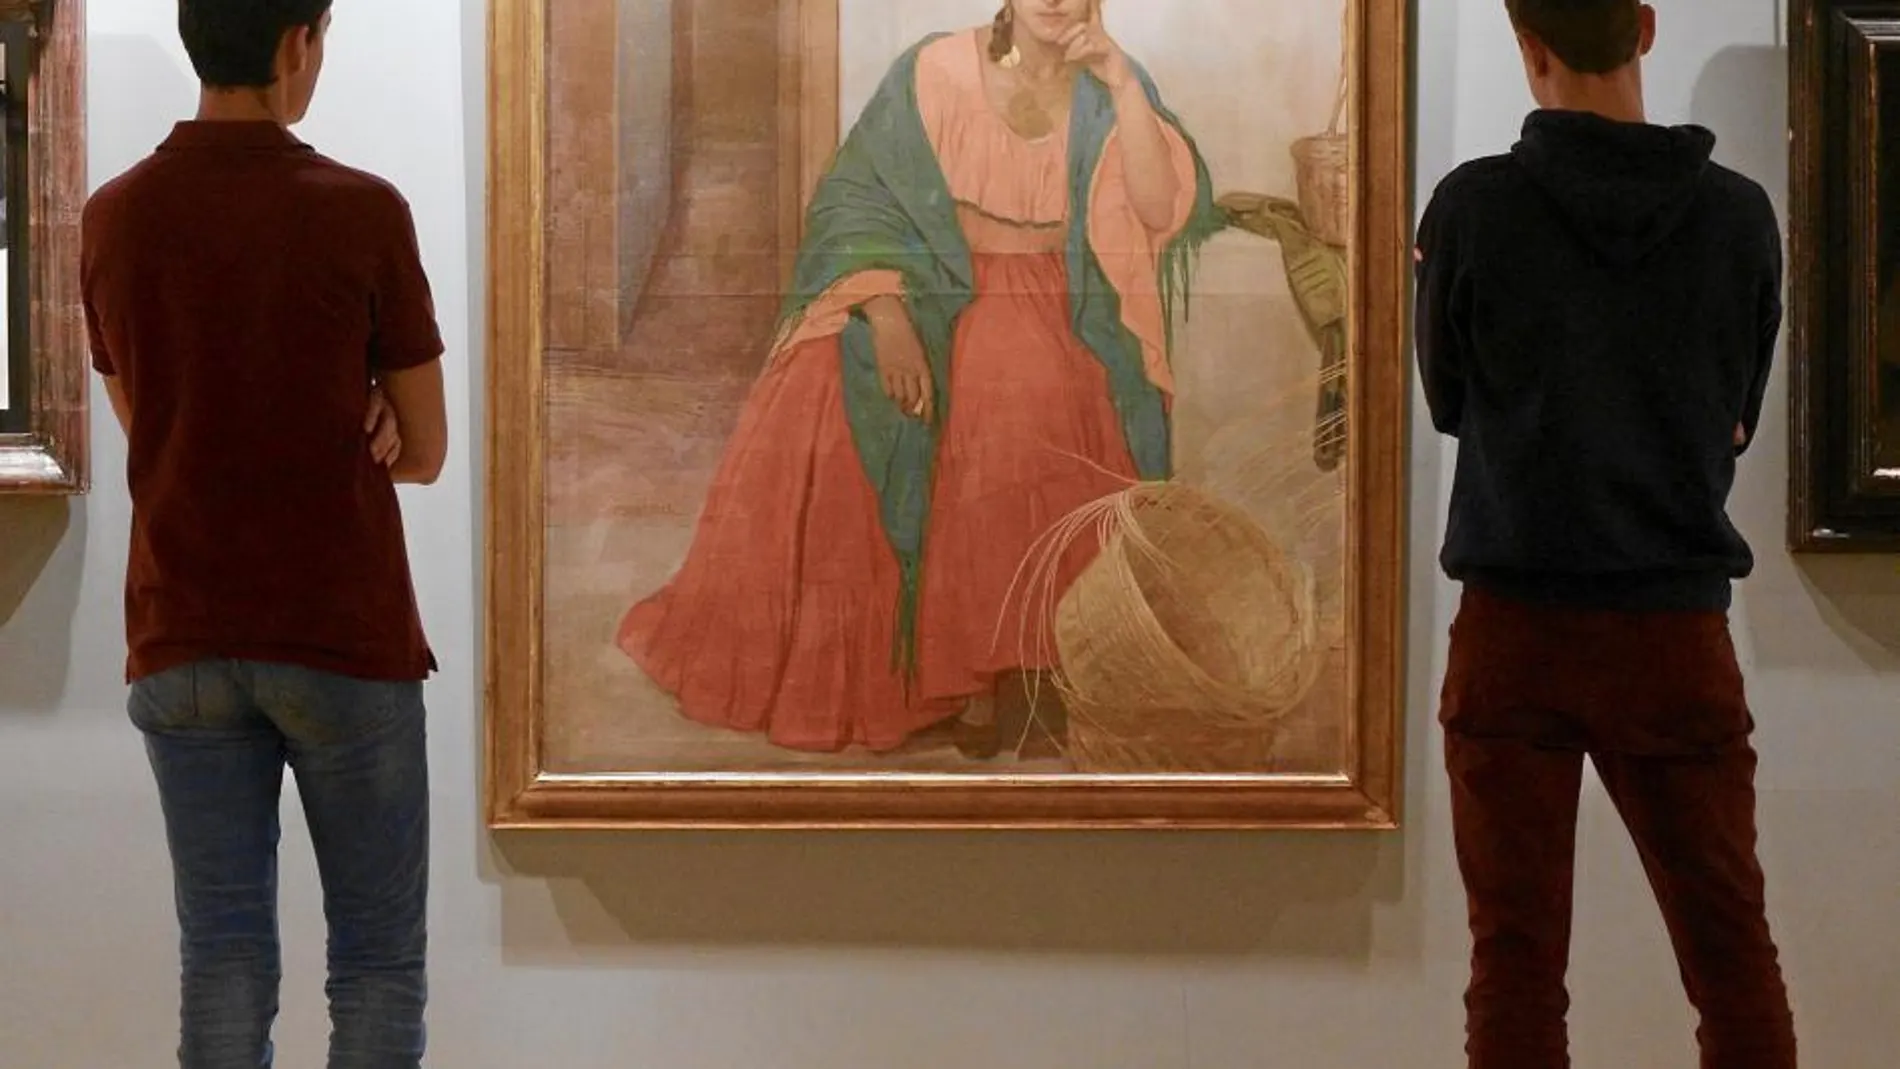 Dos estudiantes observan un cuadro de Anselmo Miguel Nieto en el colegio Nuestra Señora de Lourdes de Valladolid